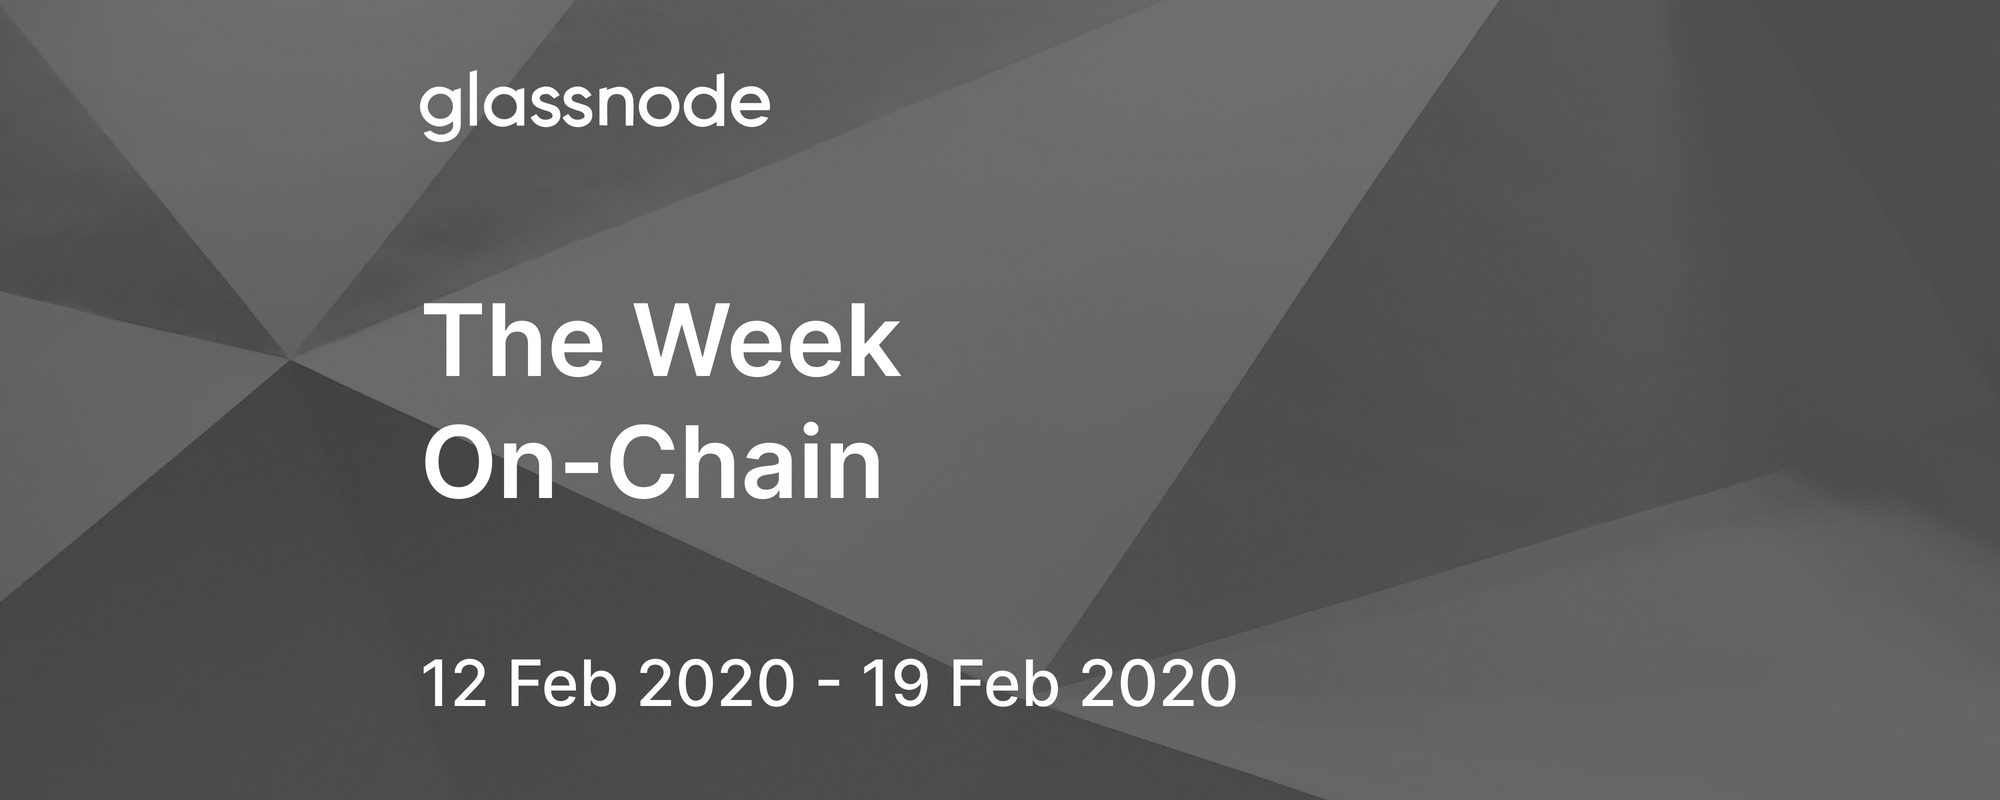 The Week On-Chain (12 Feb 2020 - 19 Feb 2020)